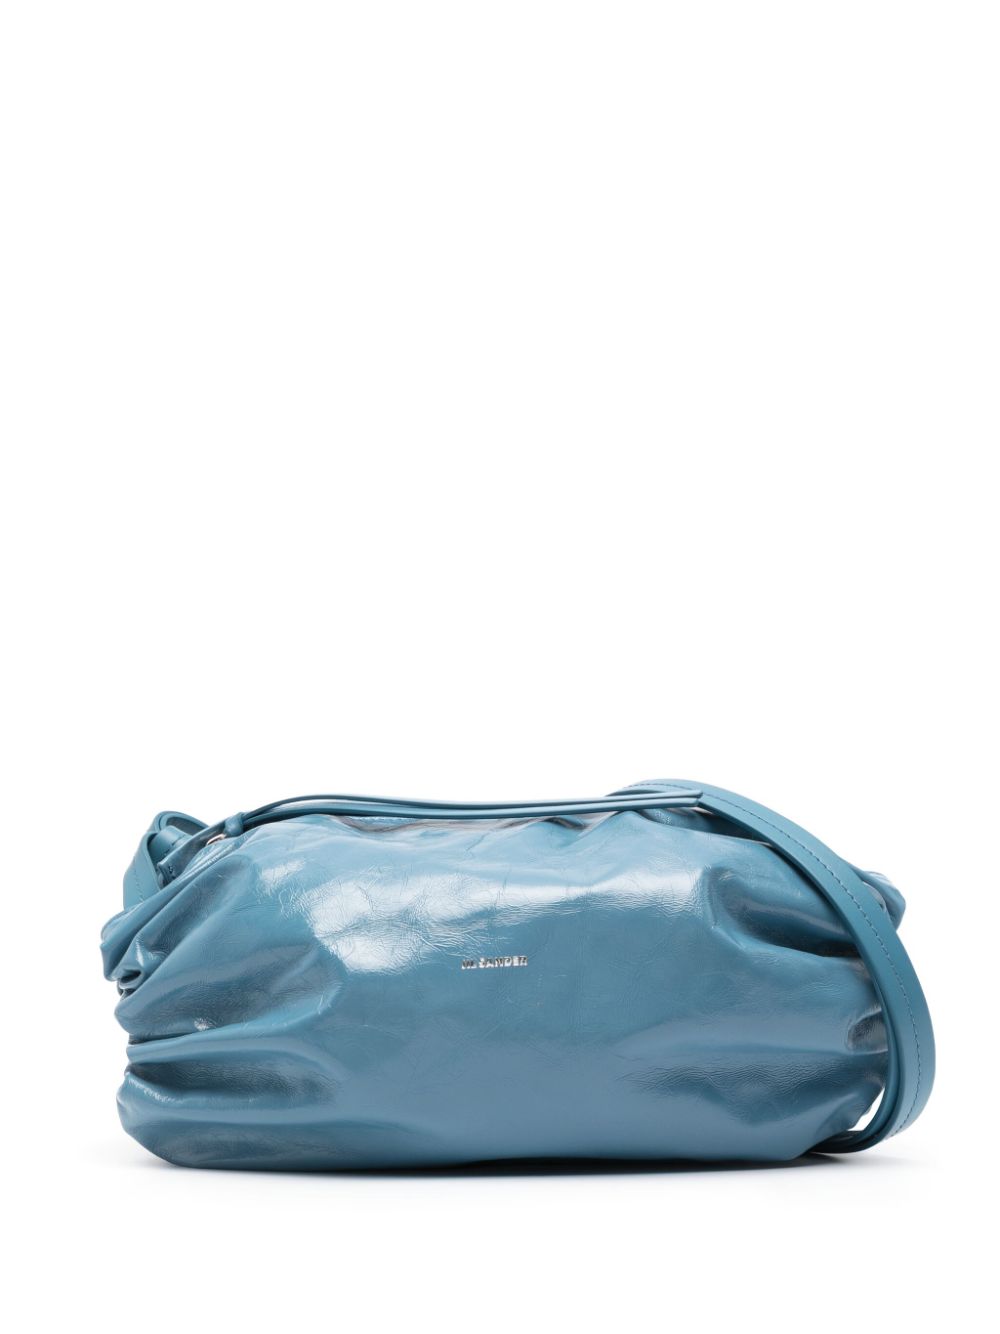 حقيبة كروس للنساء من الجلد باللون الأزرق الداكن